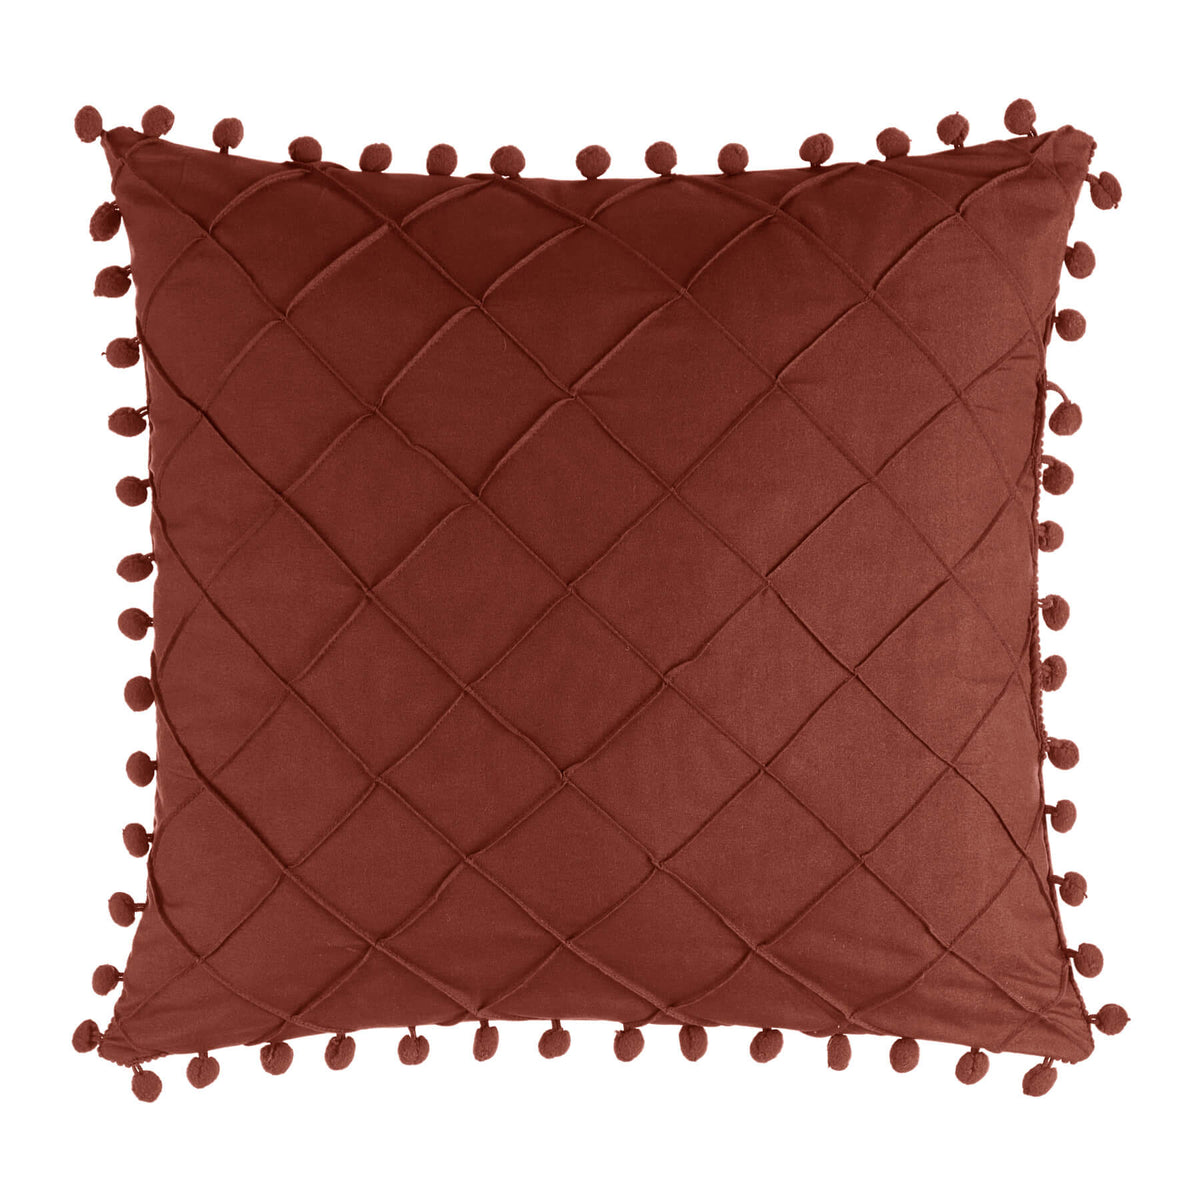 Chic Home Leona 5 Piece Pleated Seersucker Comforter Set-